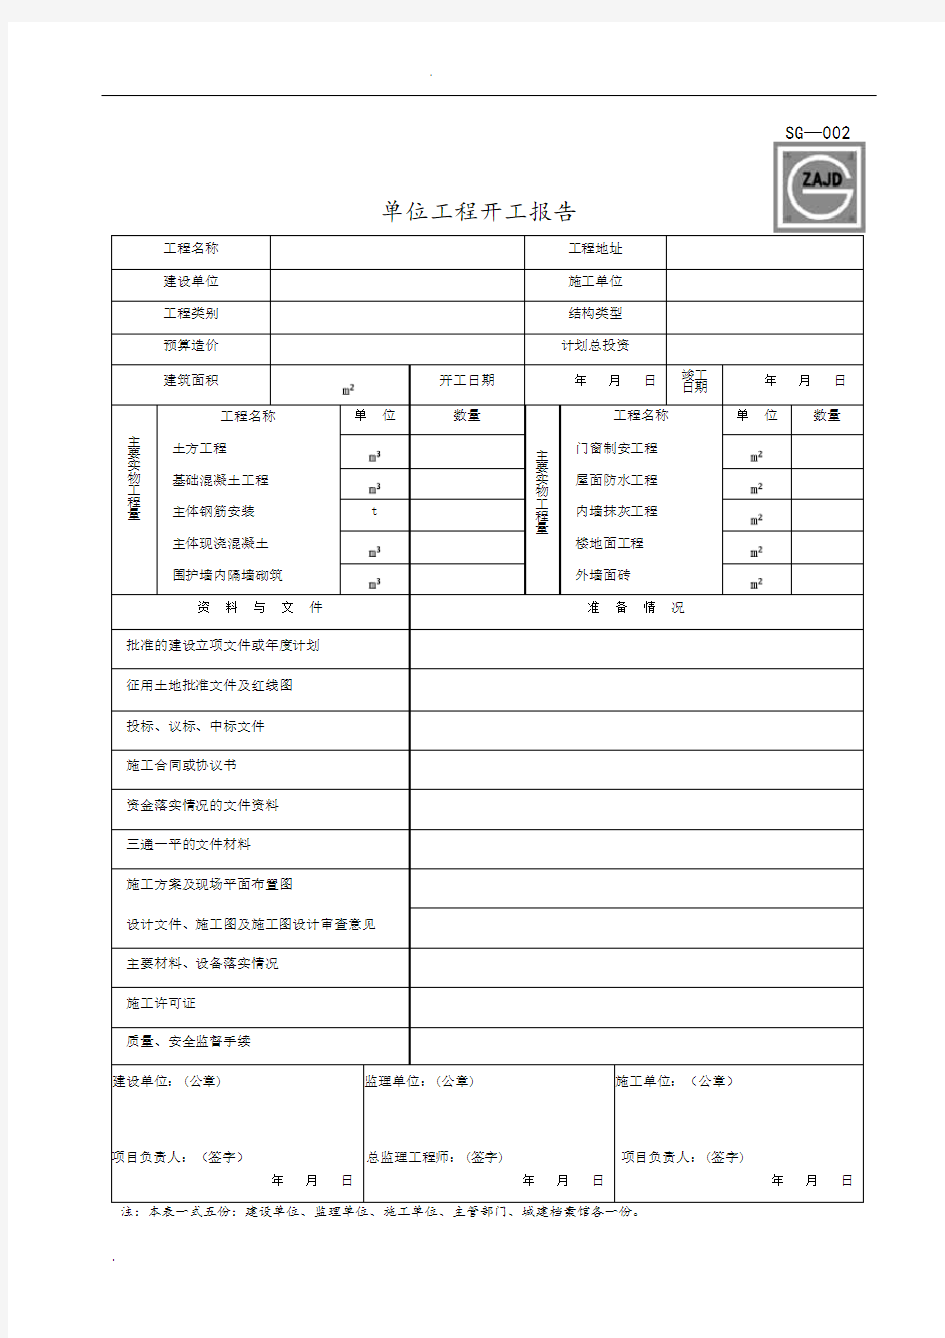 四川省建筑施工资料表格(施工单位用表)(全套)